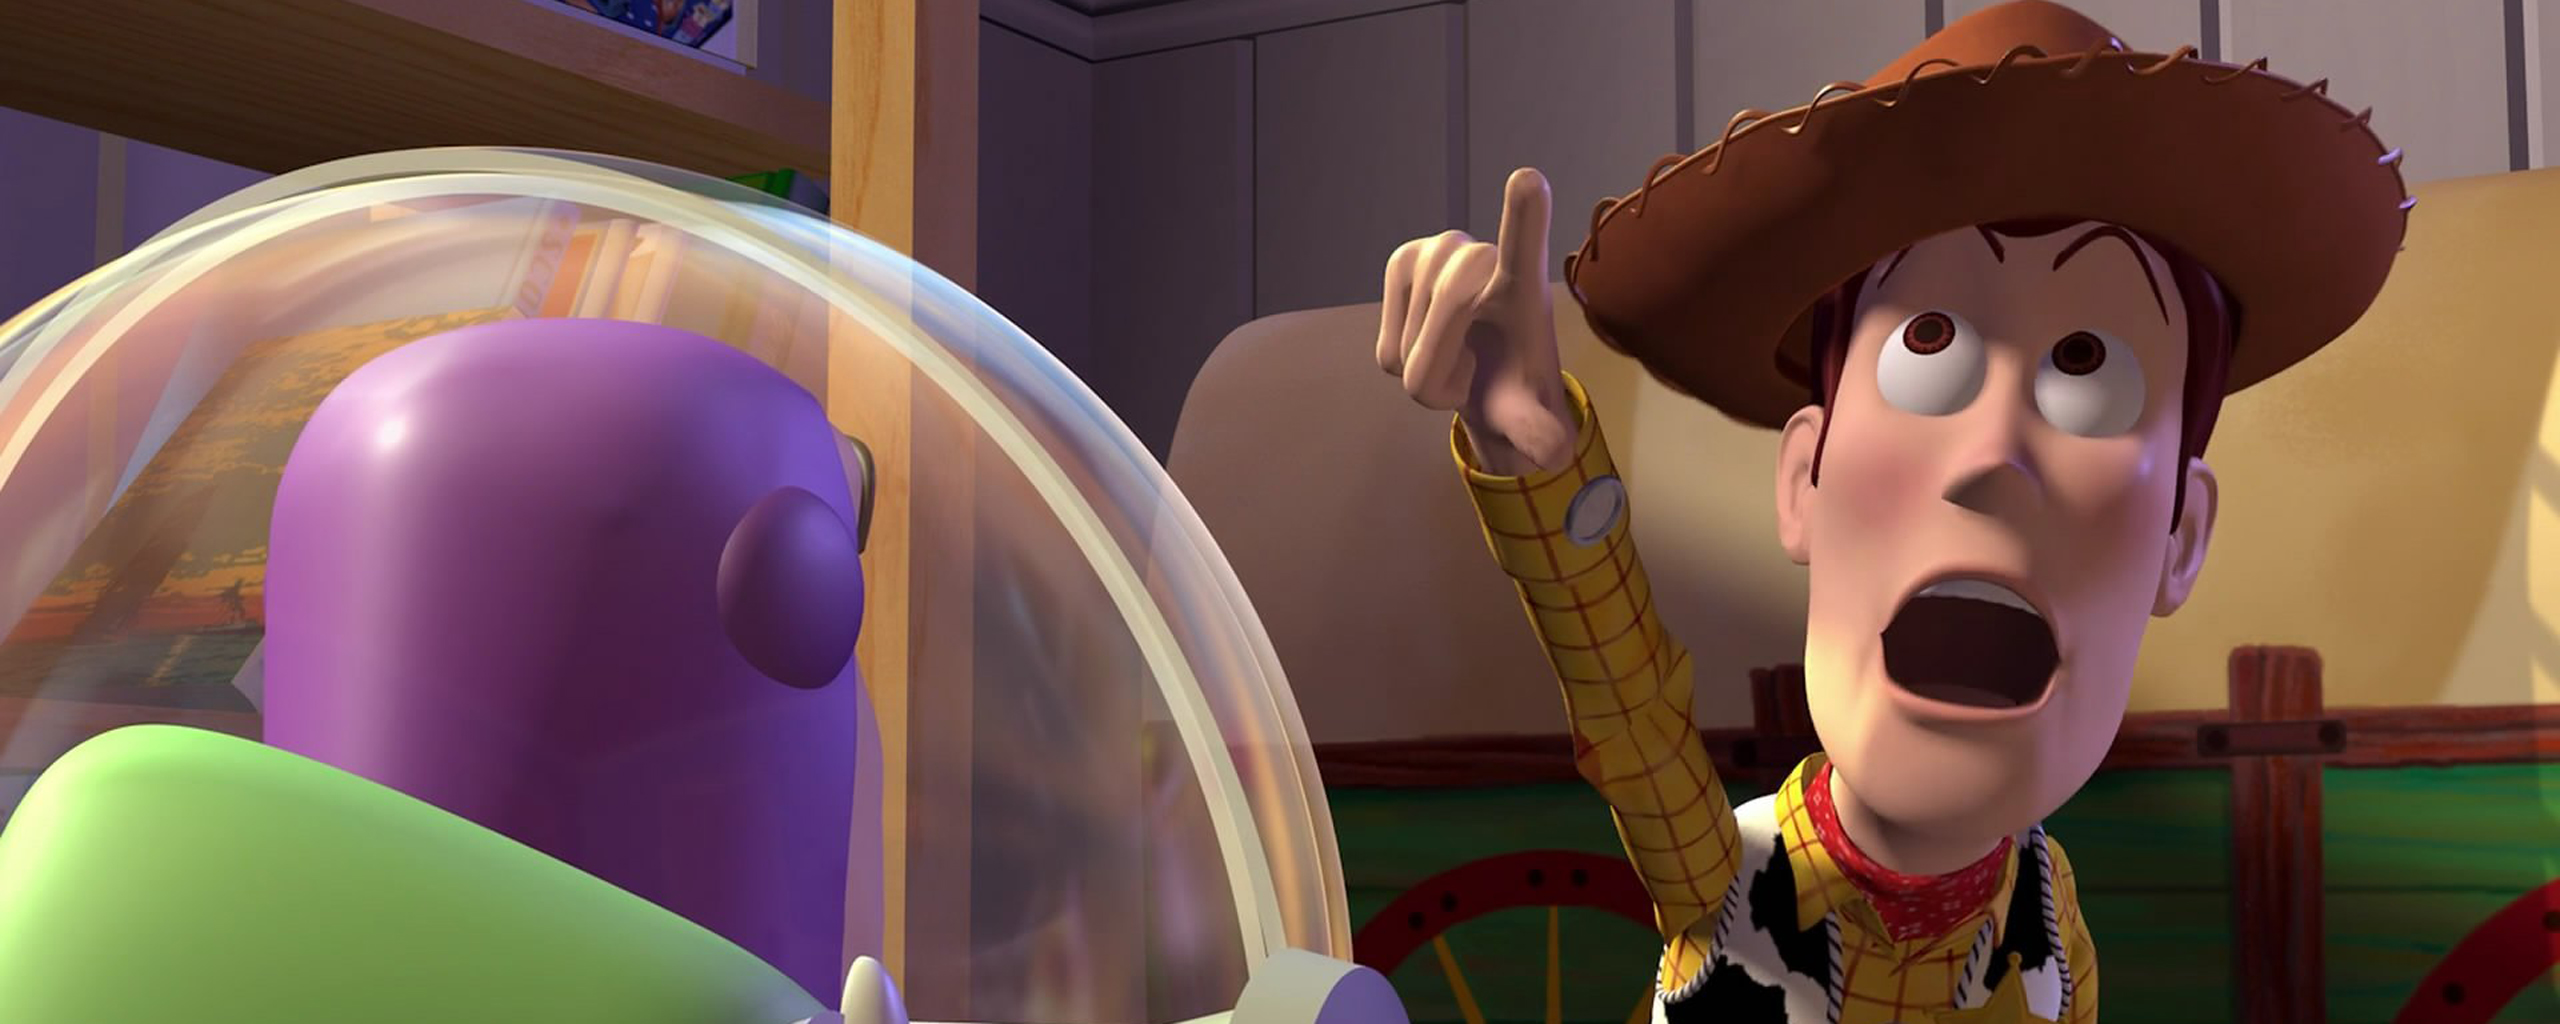 Woody Toy Story Buzz Lightyear 2560x1024